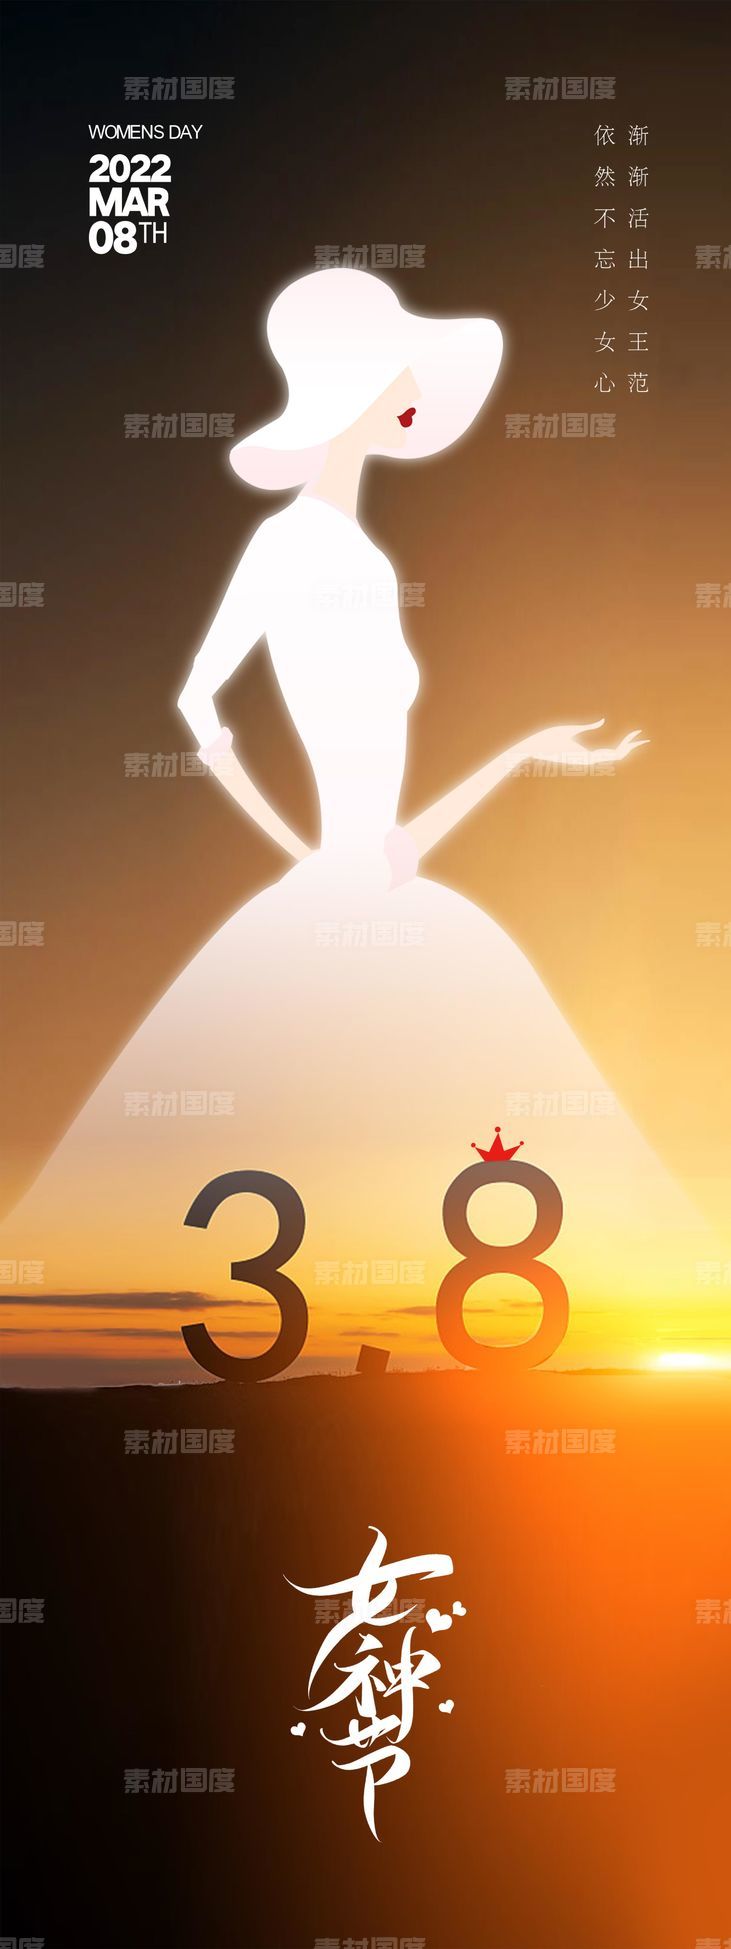 38 女王节 女神节 妇女节 大气海报 地产 数字38